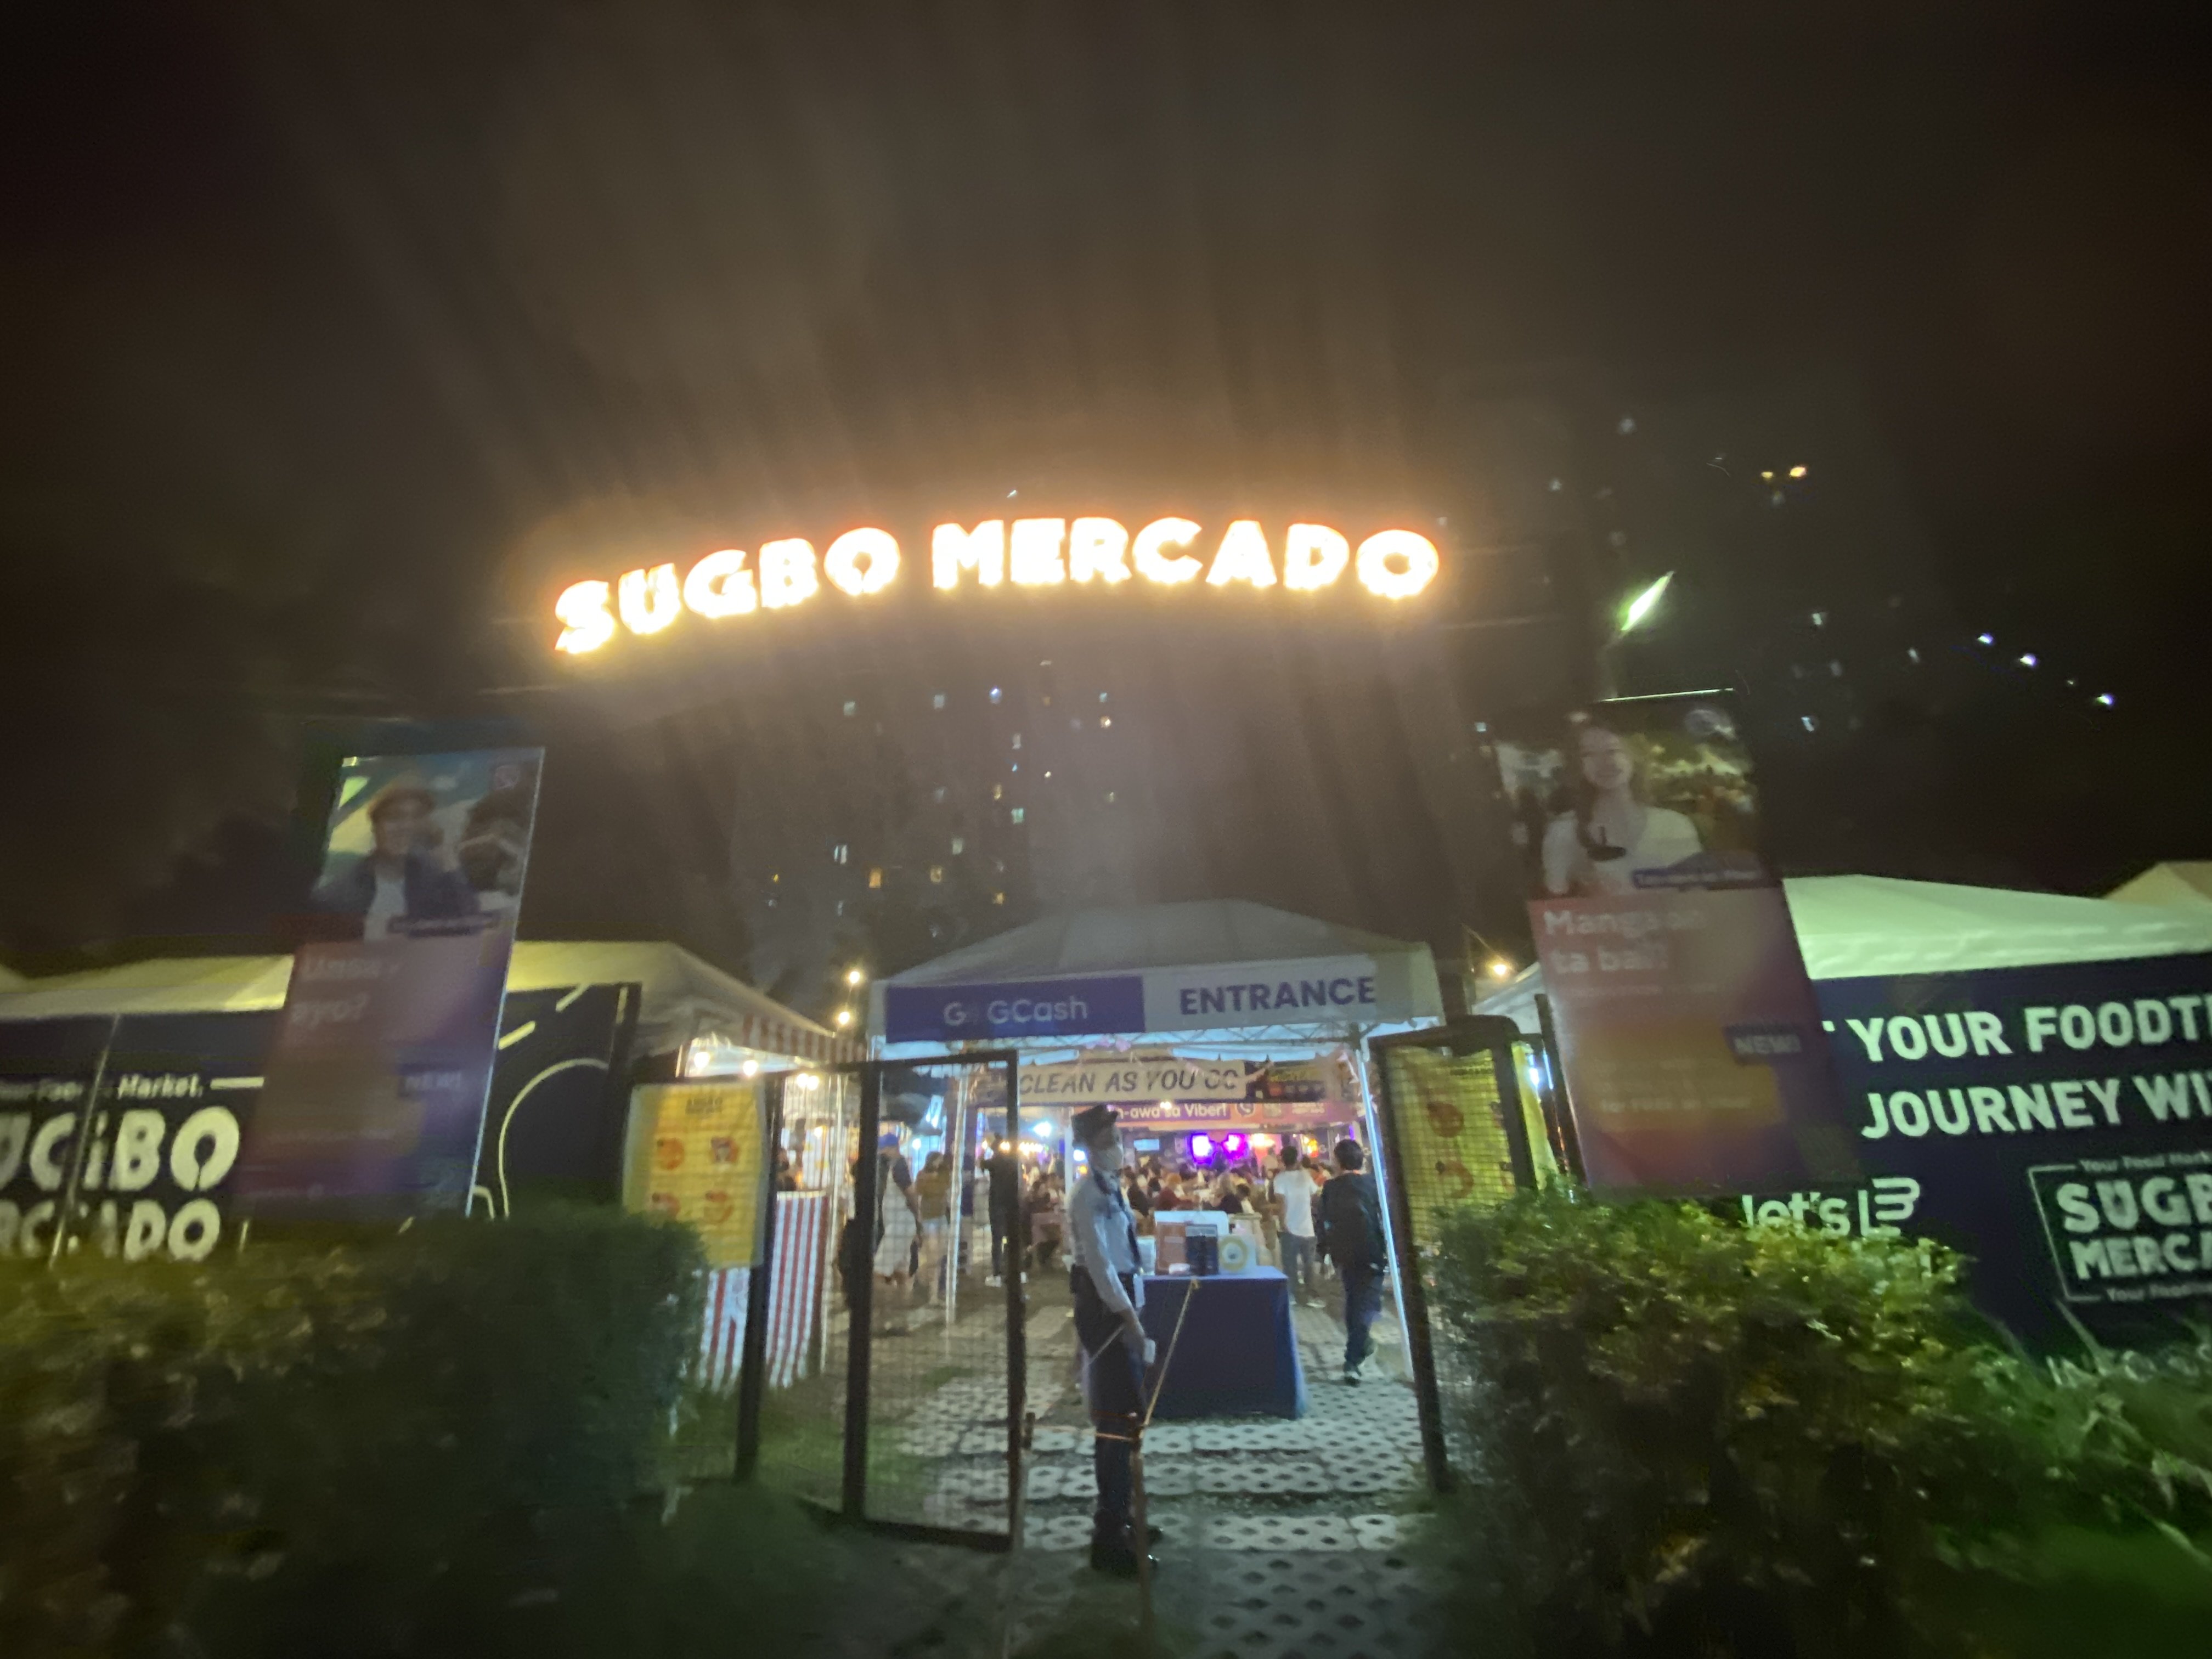 宿霧當地夜市Sugbo Mercado